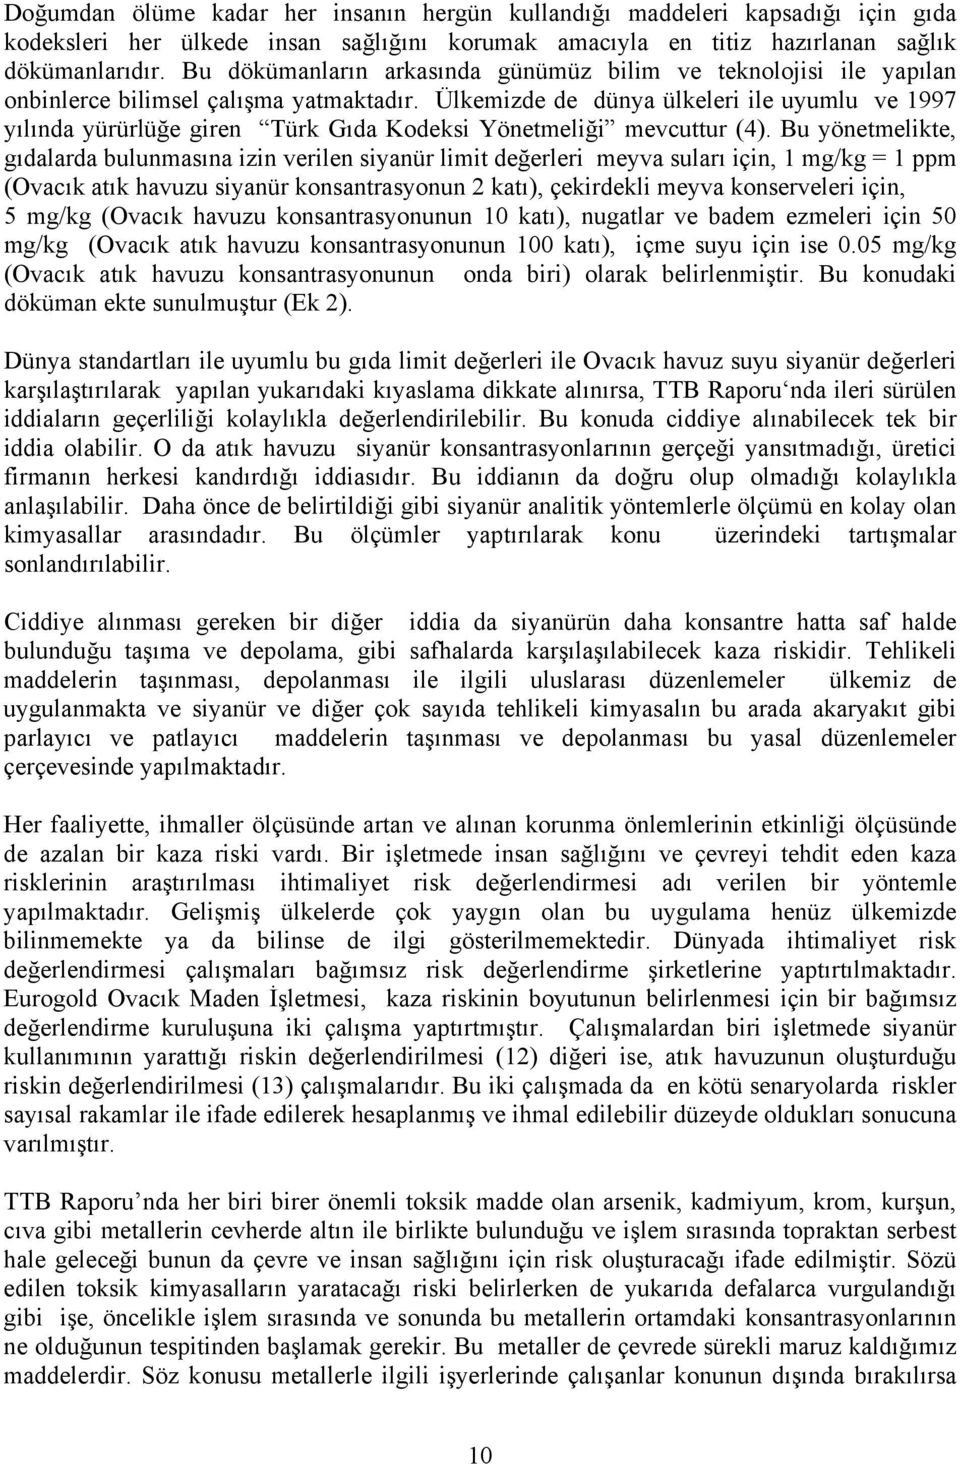 Ülkemizde de dünya ülkeleri ile uyumlu ve 1997 yılında yürürlüğe giren Türk Gıda Kodeksi Yönetmeliği mevcuttur (4).